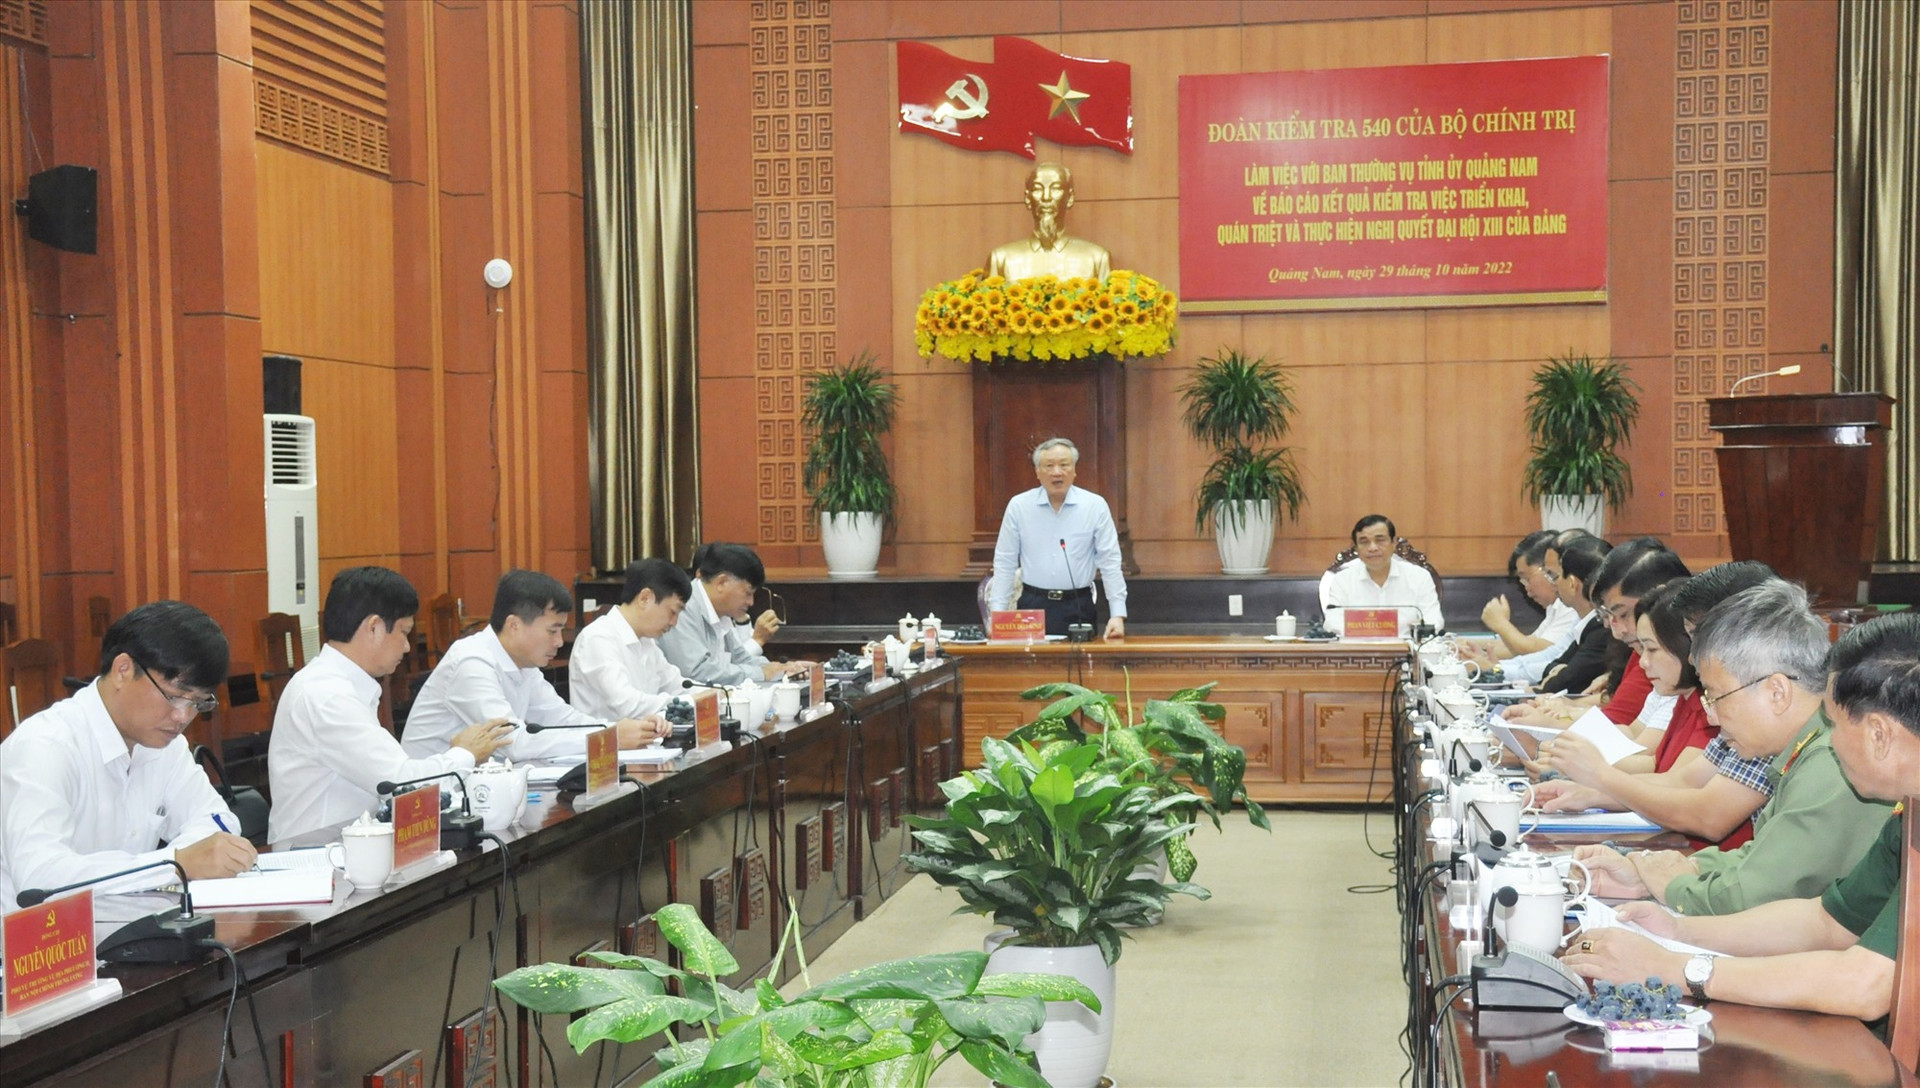 Quang cảnh cuộc làm việc giữa Đoàn kiểm tra 540 của Bộ Chính trị với Ban Thường vụ Tỉnh ủy Quảng Nam sáng nay 29/10. Ảnh: N.Đ